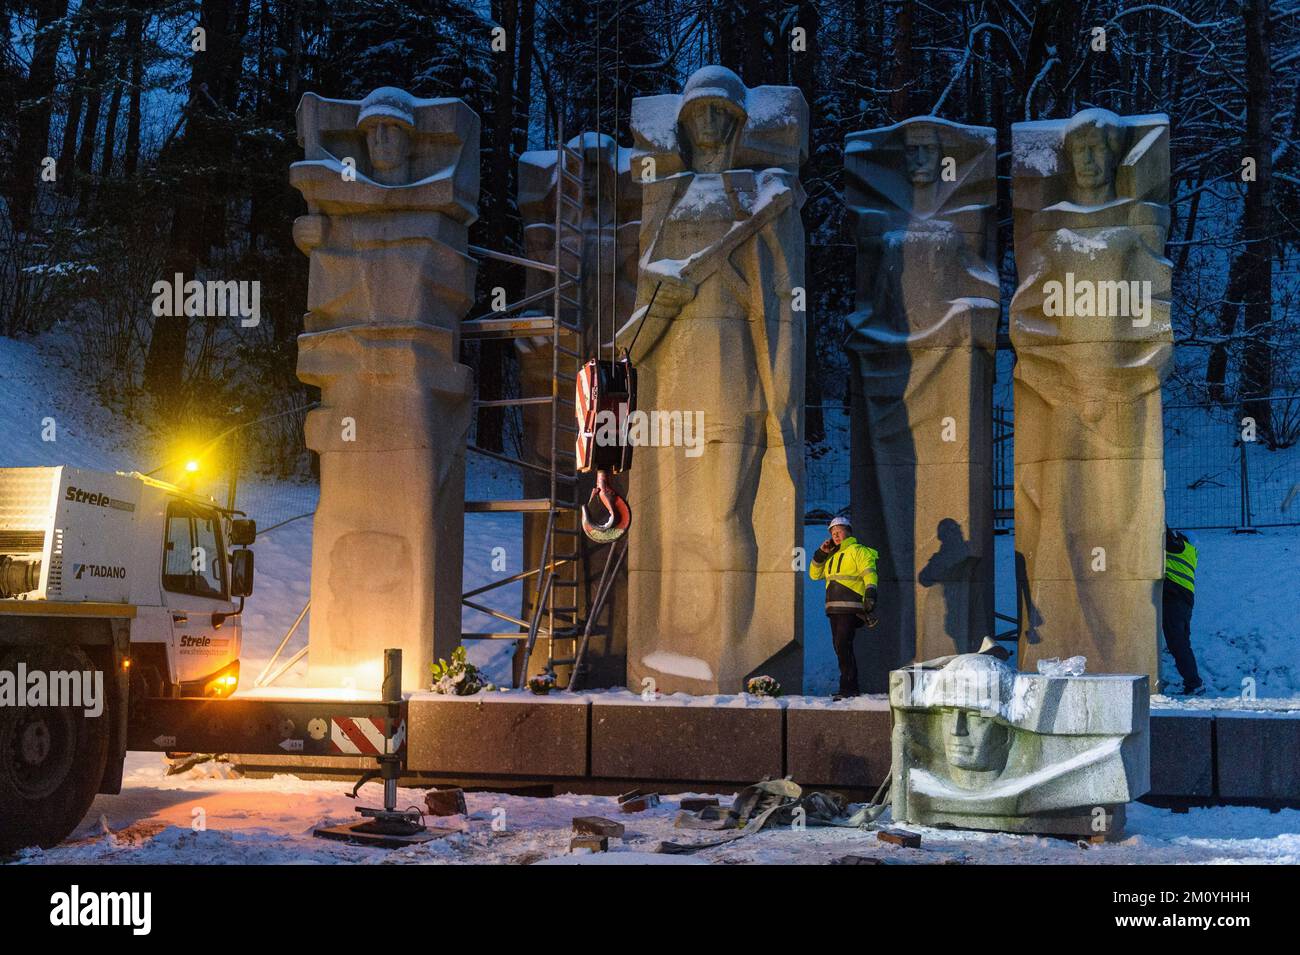 Vilnius, Lituaniua, 6 décembre 2022, des travailleurs ont démantelé le monument des soldats de l'Armée rouge soviétique au cimetière d'Antakalnis à Vilnius. Le mémorial, construit en 1984, a été dédié aux soldats de l'Armée rouge qui sont morts pendant la libération de Vilnius des envahisseurs nazis pendant la Seconde Guerre mondiale. Sur 6 décembre 2022, le démantèlement du monument a commencé malgré des mesures provisoires, qui ont été imposées par le Comité des droits de l'homme des Nations Unies après une pétition signée par quelques «Russes ethniques». L'ambassade de Russie en Lituanie a qualifié le retrait du monument de « moquerie barbare » et a appelé « à évaluer cette de Banque D'Images